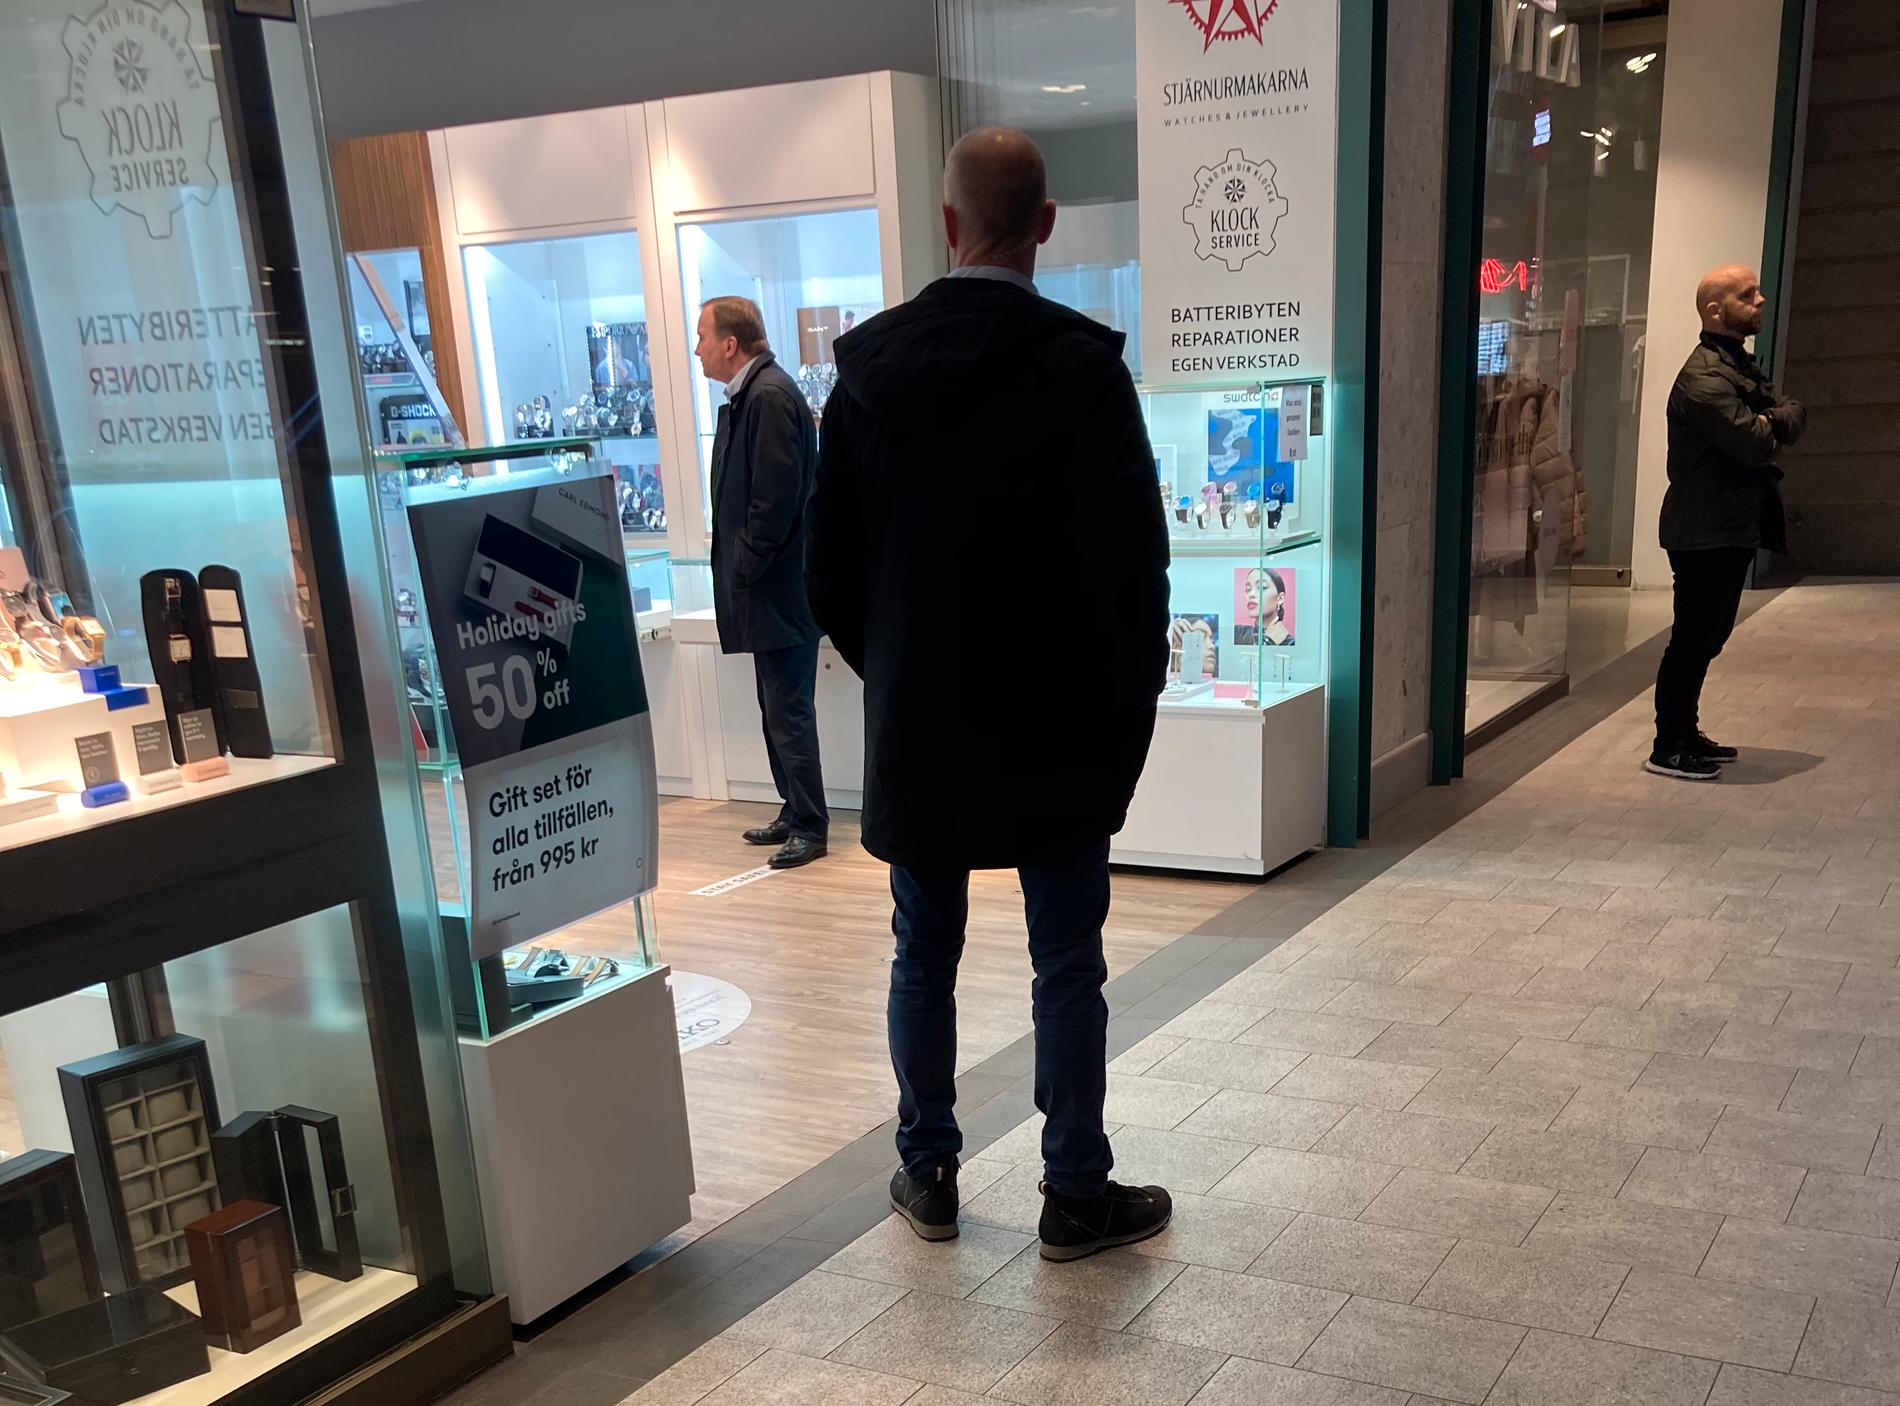  Stefan Löfven var ute och besökte Gallerian i Stockholm den 22 december efter att gått ut och varnat för trängsel och att man ska hålla sig ifrån köpcenter.